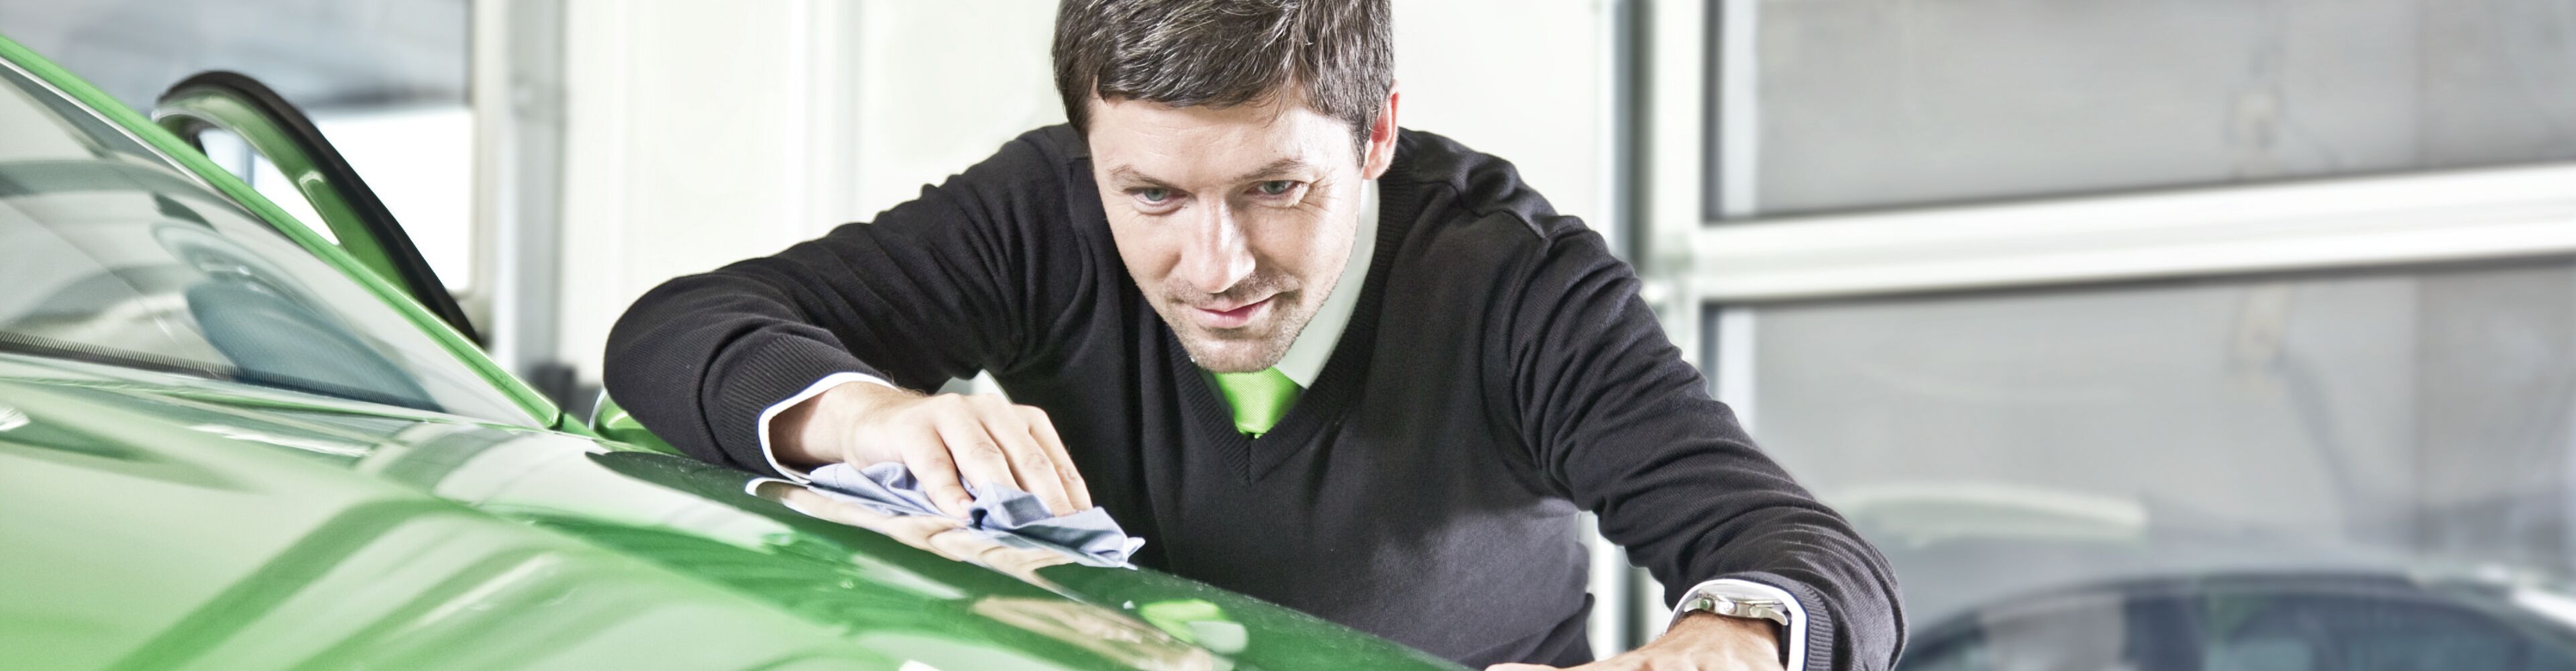 Die Front eines Škoda Modells wird poliert